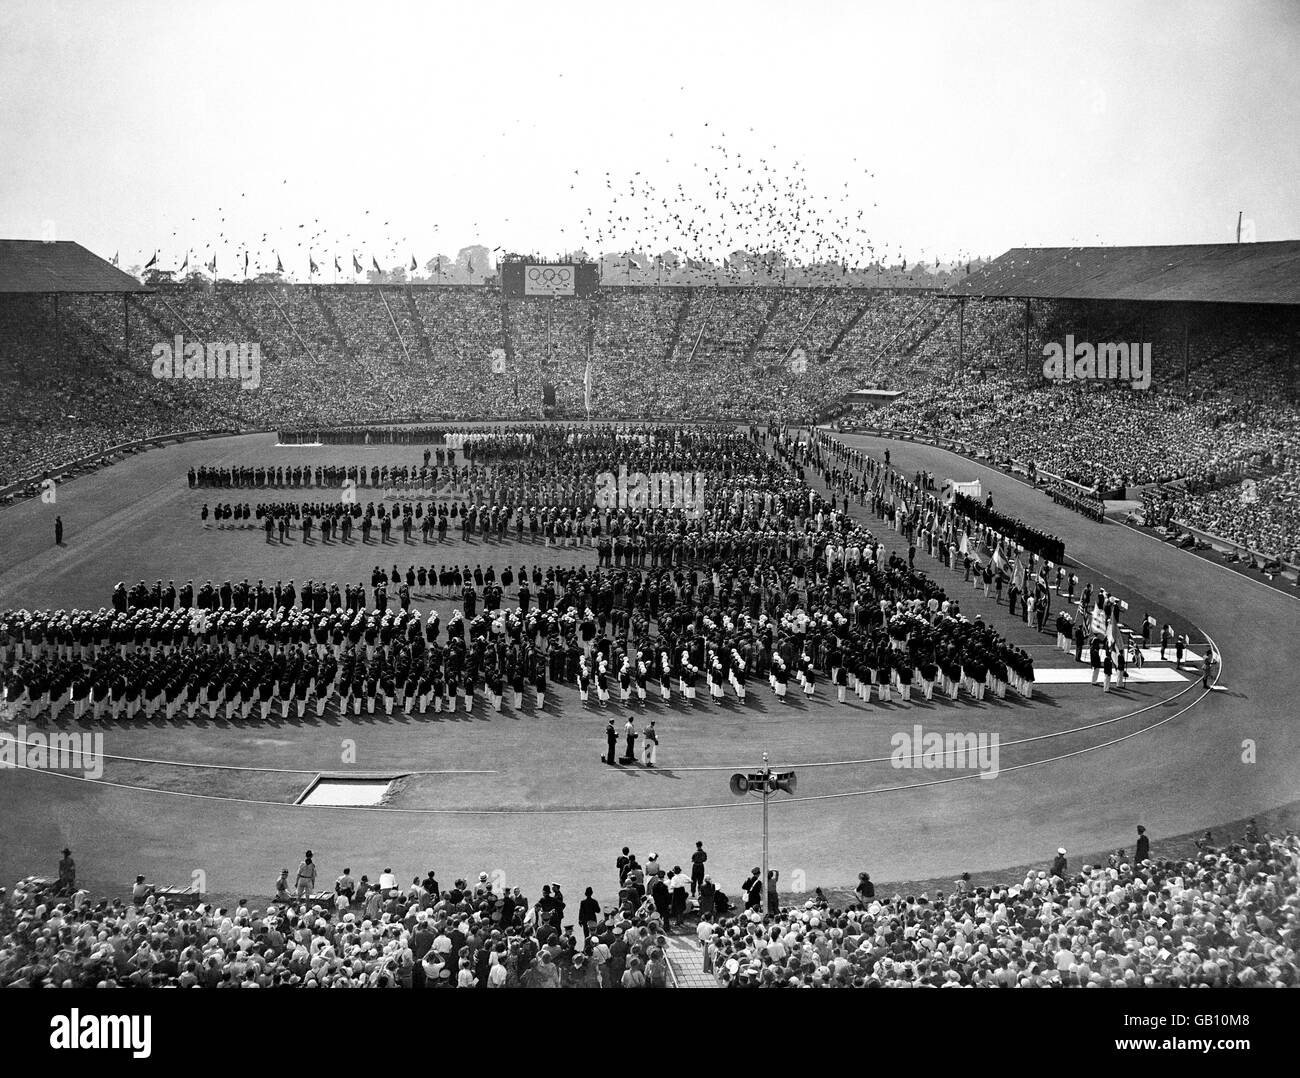 Olympische Spiele 1948 In London - Eröffnungszeremonie - Wembley. Die Teams stellten sich während der Eröffnungszeremonie der Olympischen Spiele auf, als 2500 Tauben in Wembley freigelassen werden. Stockfoto